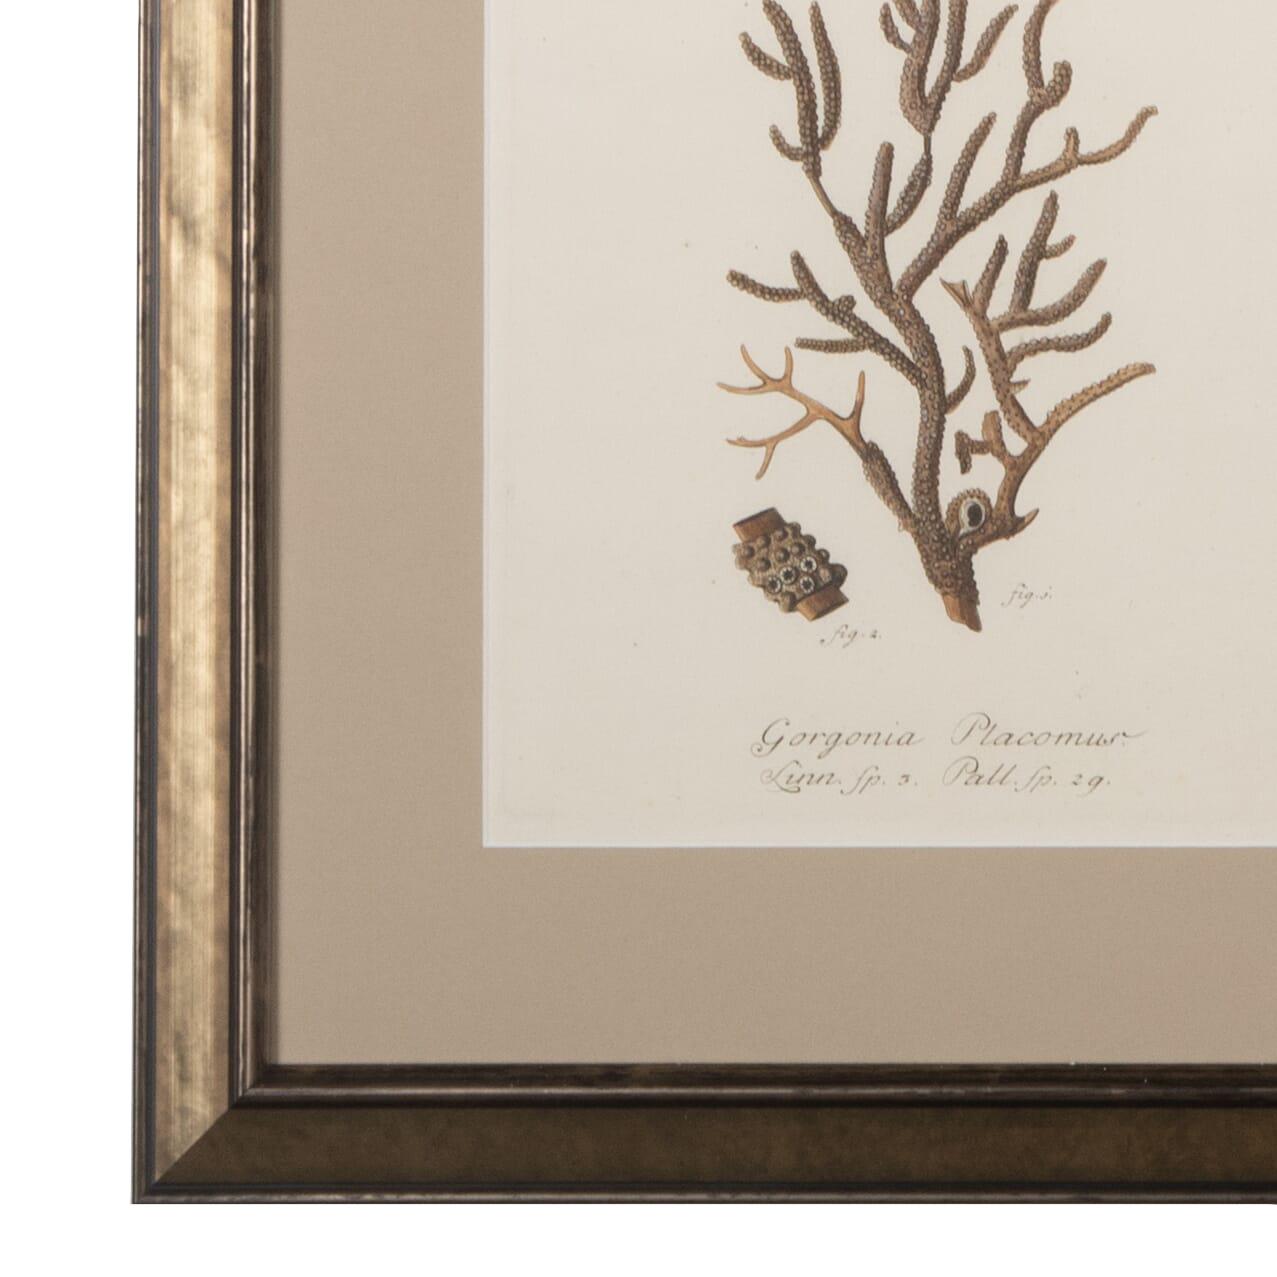 Sammlung von neun Korallenstichen aus dem 18. Jahrhundert.
Montiert und gerahmt in italienischen Holzrahmen. 
CIRCA 1780.